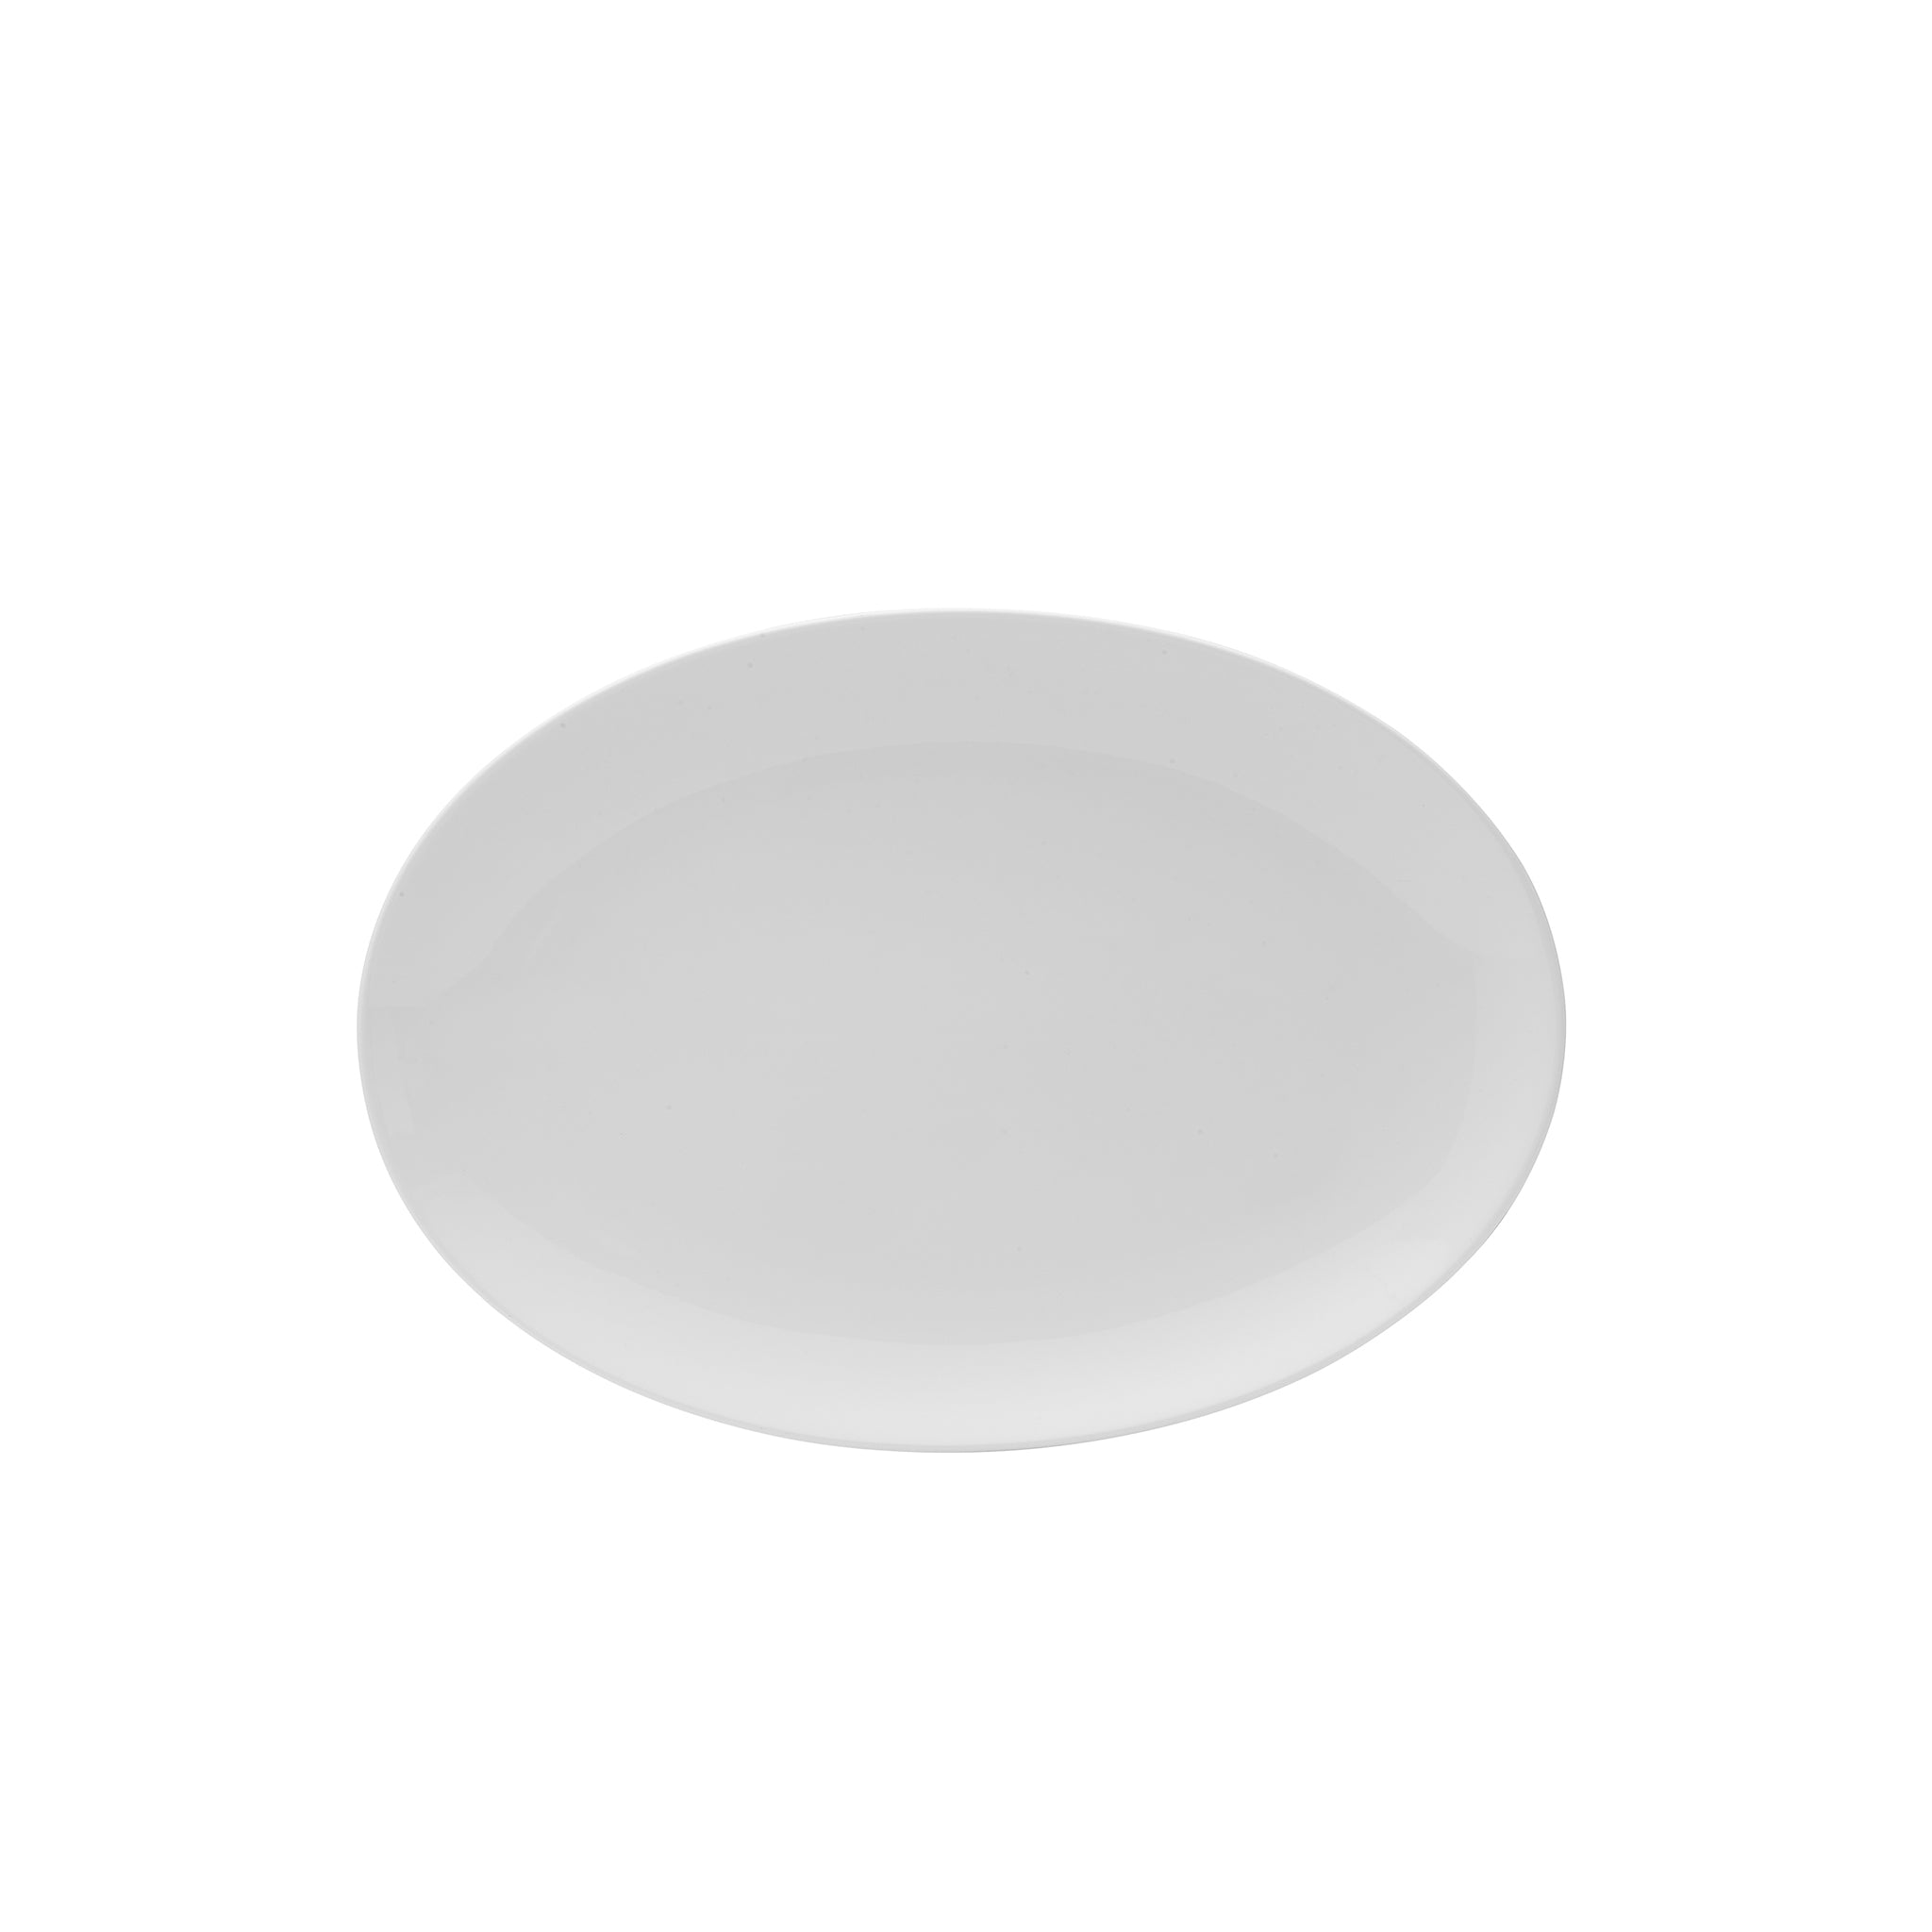 Galleria Porcelain Oval Platter 13x9" Bright White